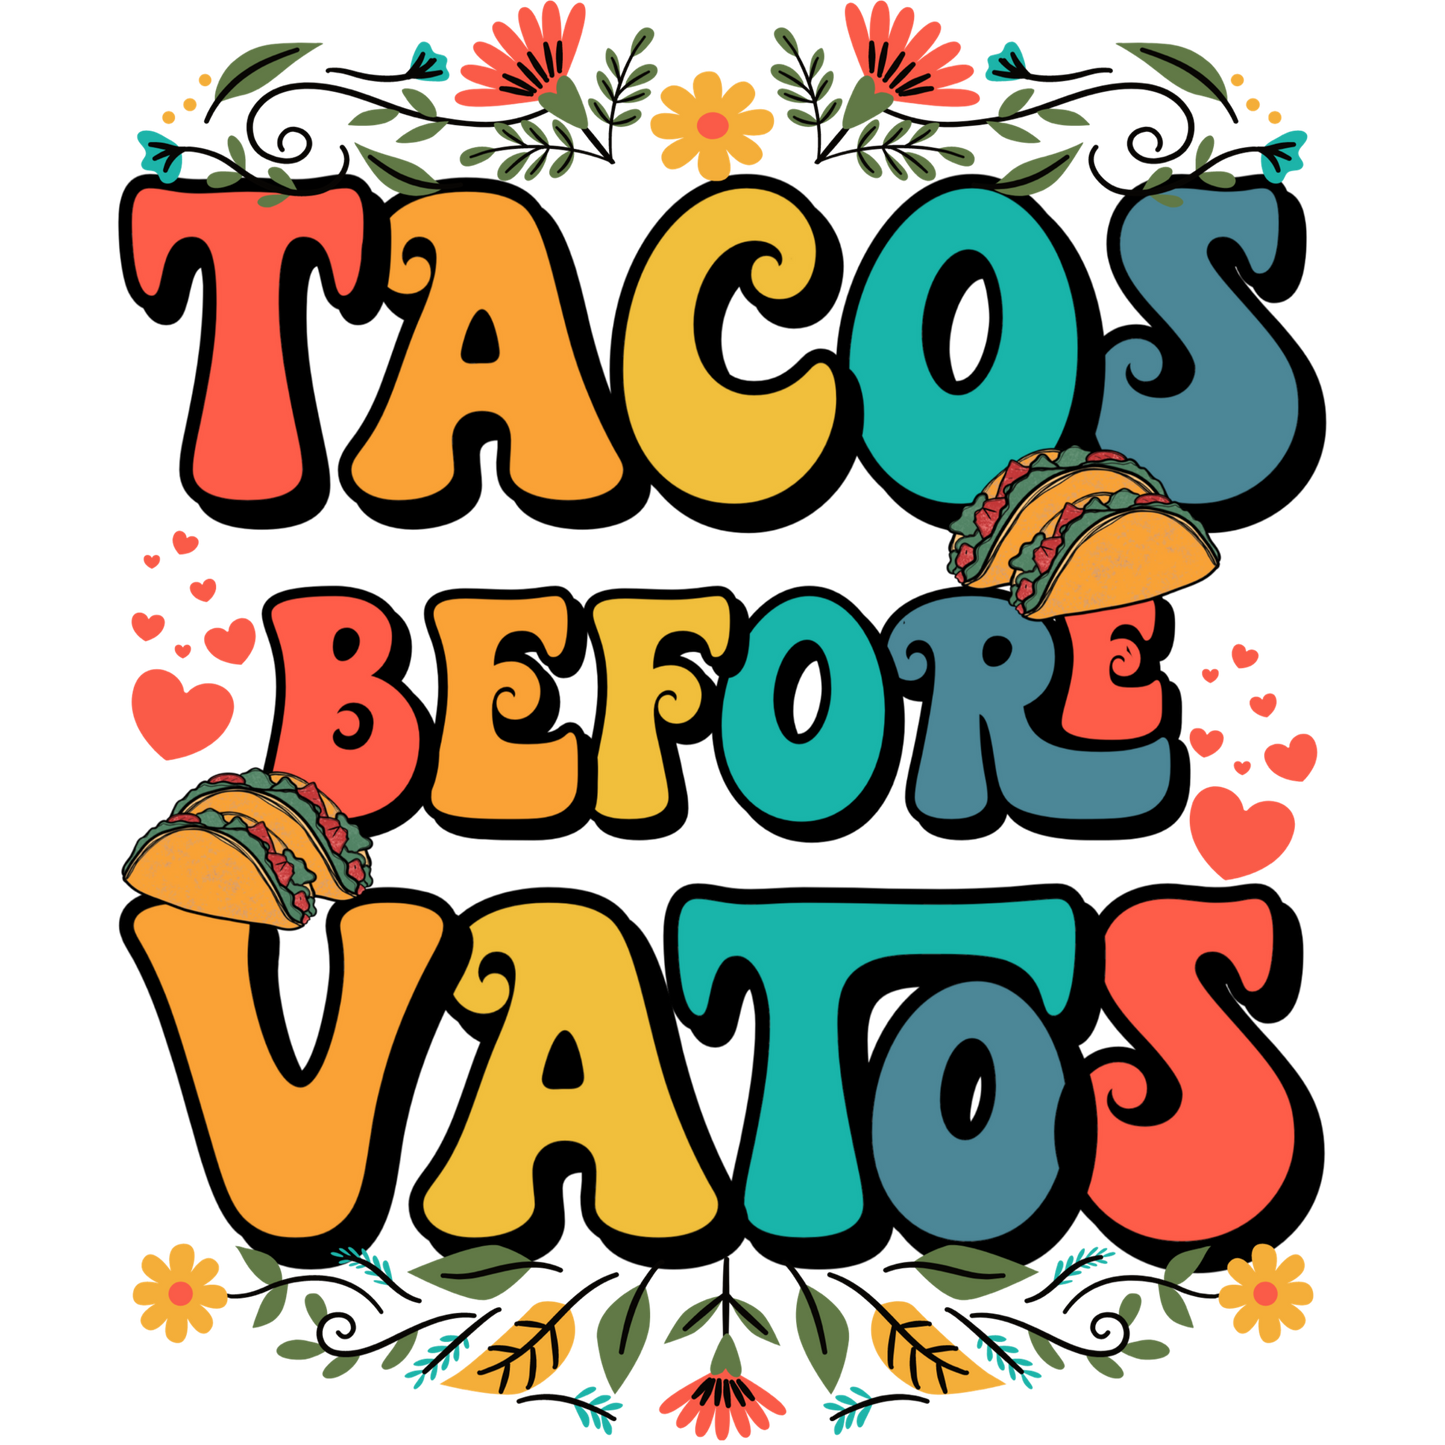 Tacos Before VATOS